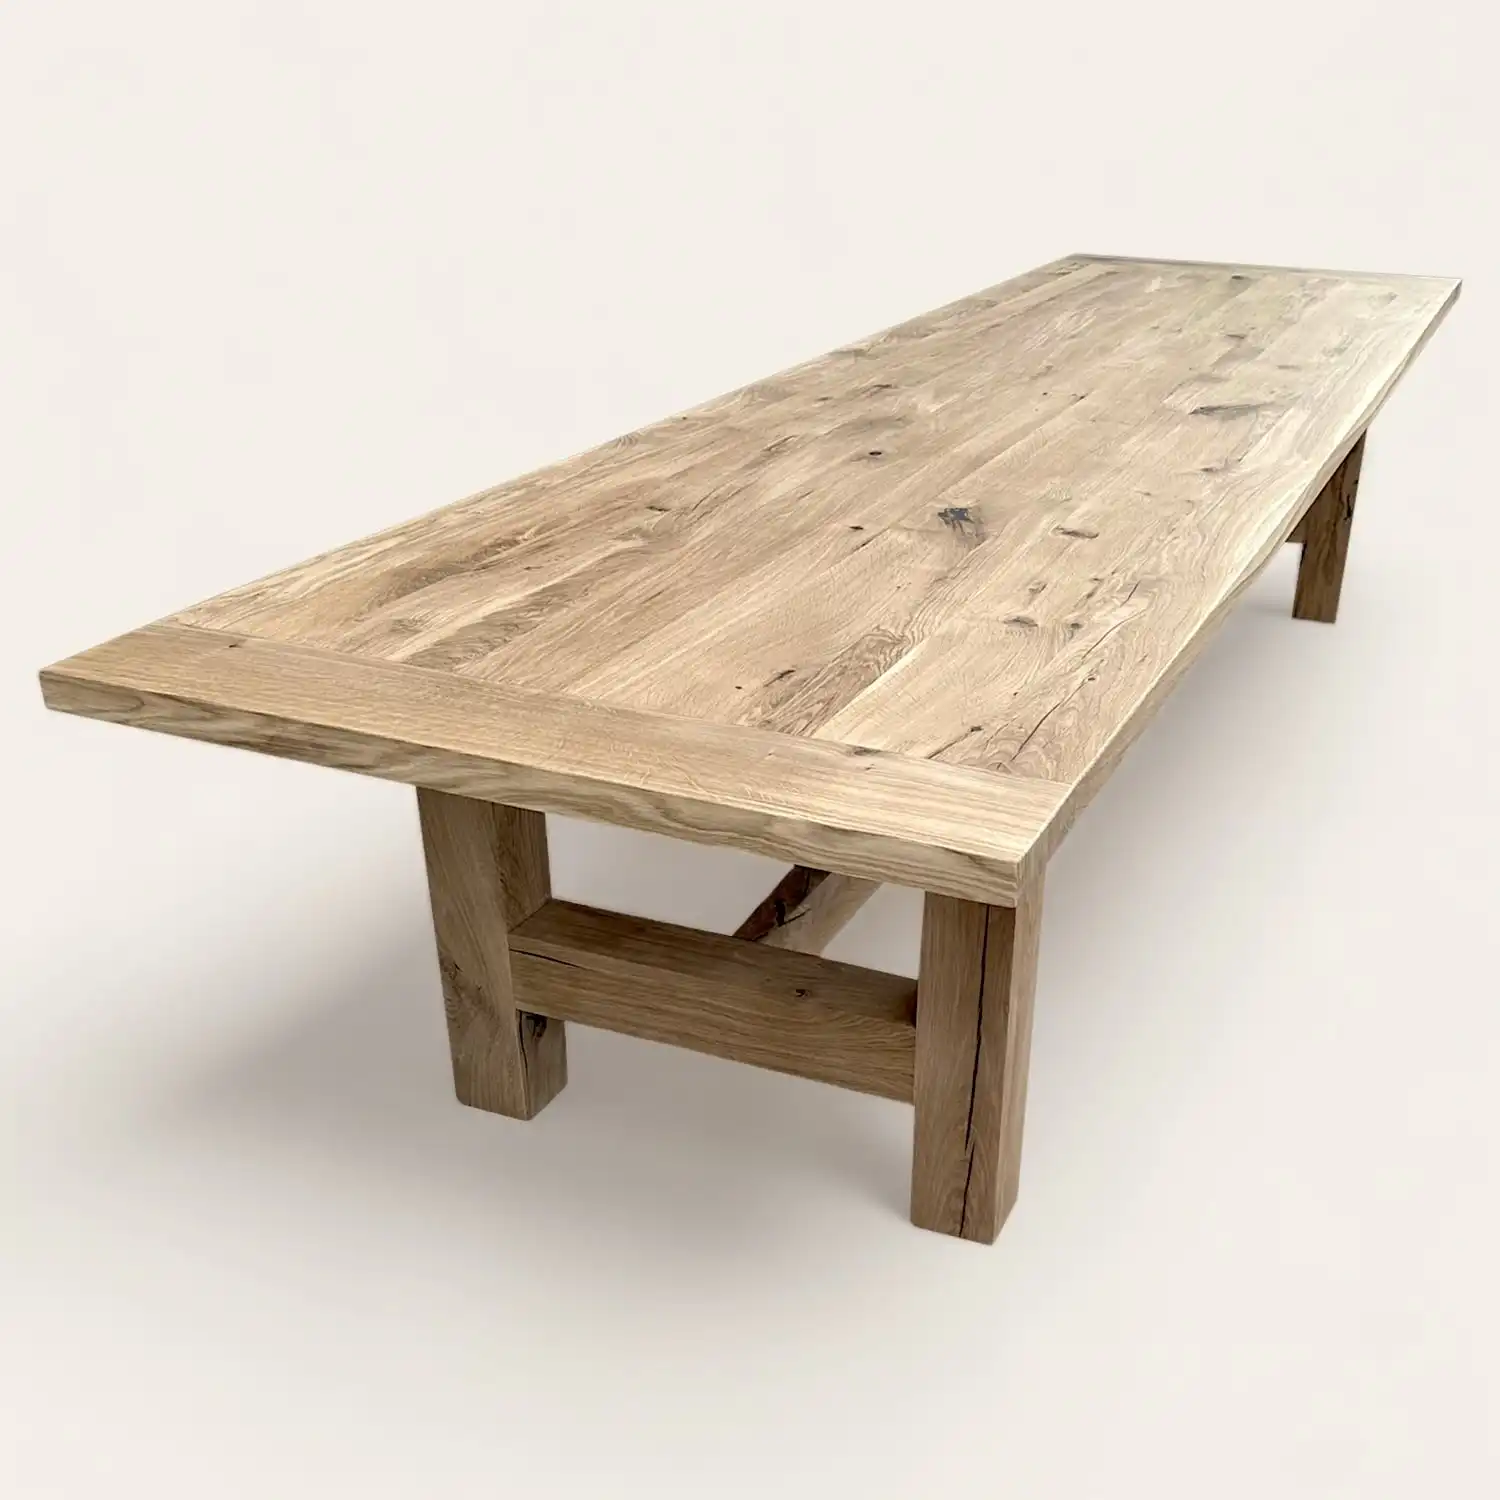  Une table à manger rustique en bois avec un long pied en bois. 